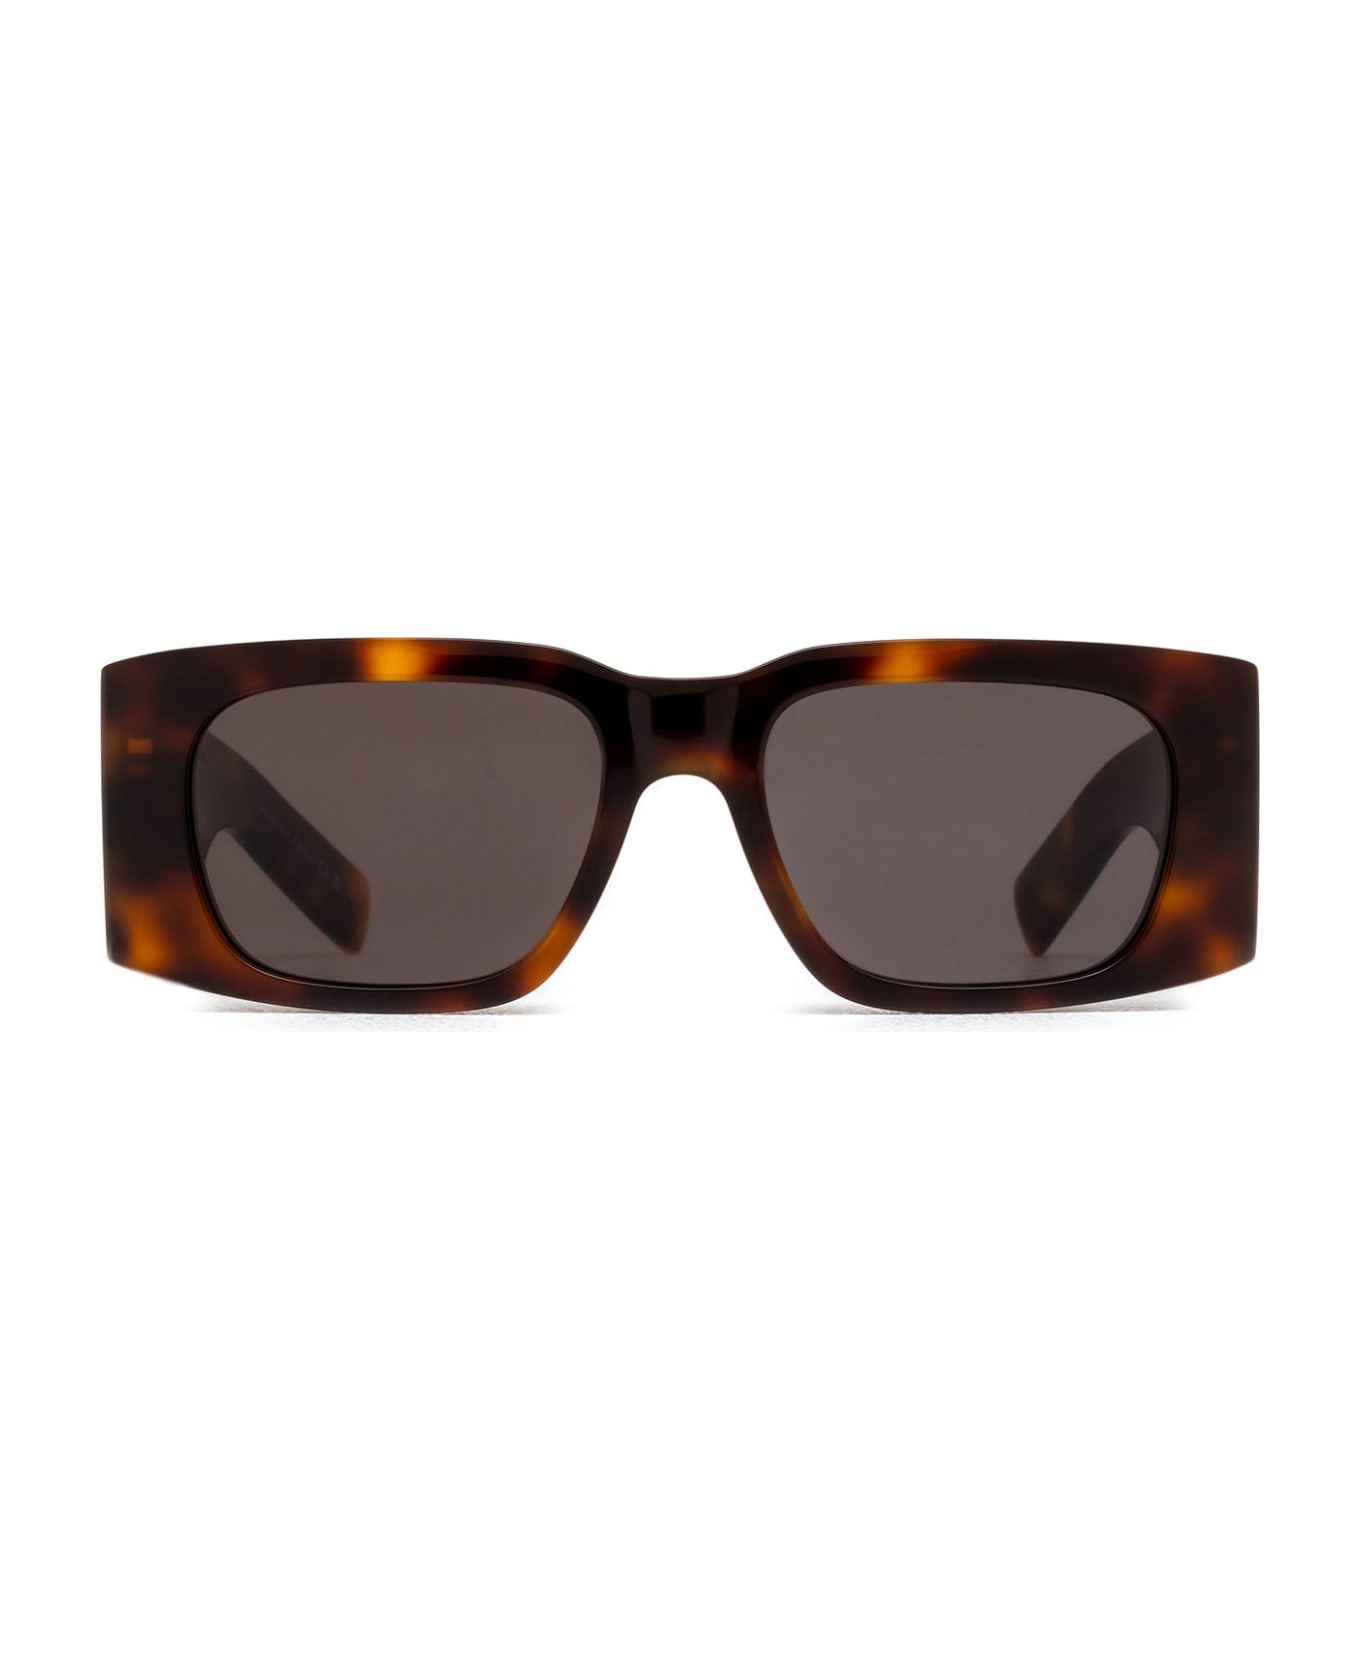 Saint Laurent Eyewear Sl 654 Havana Sunglasses - Havana